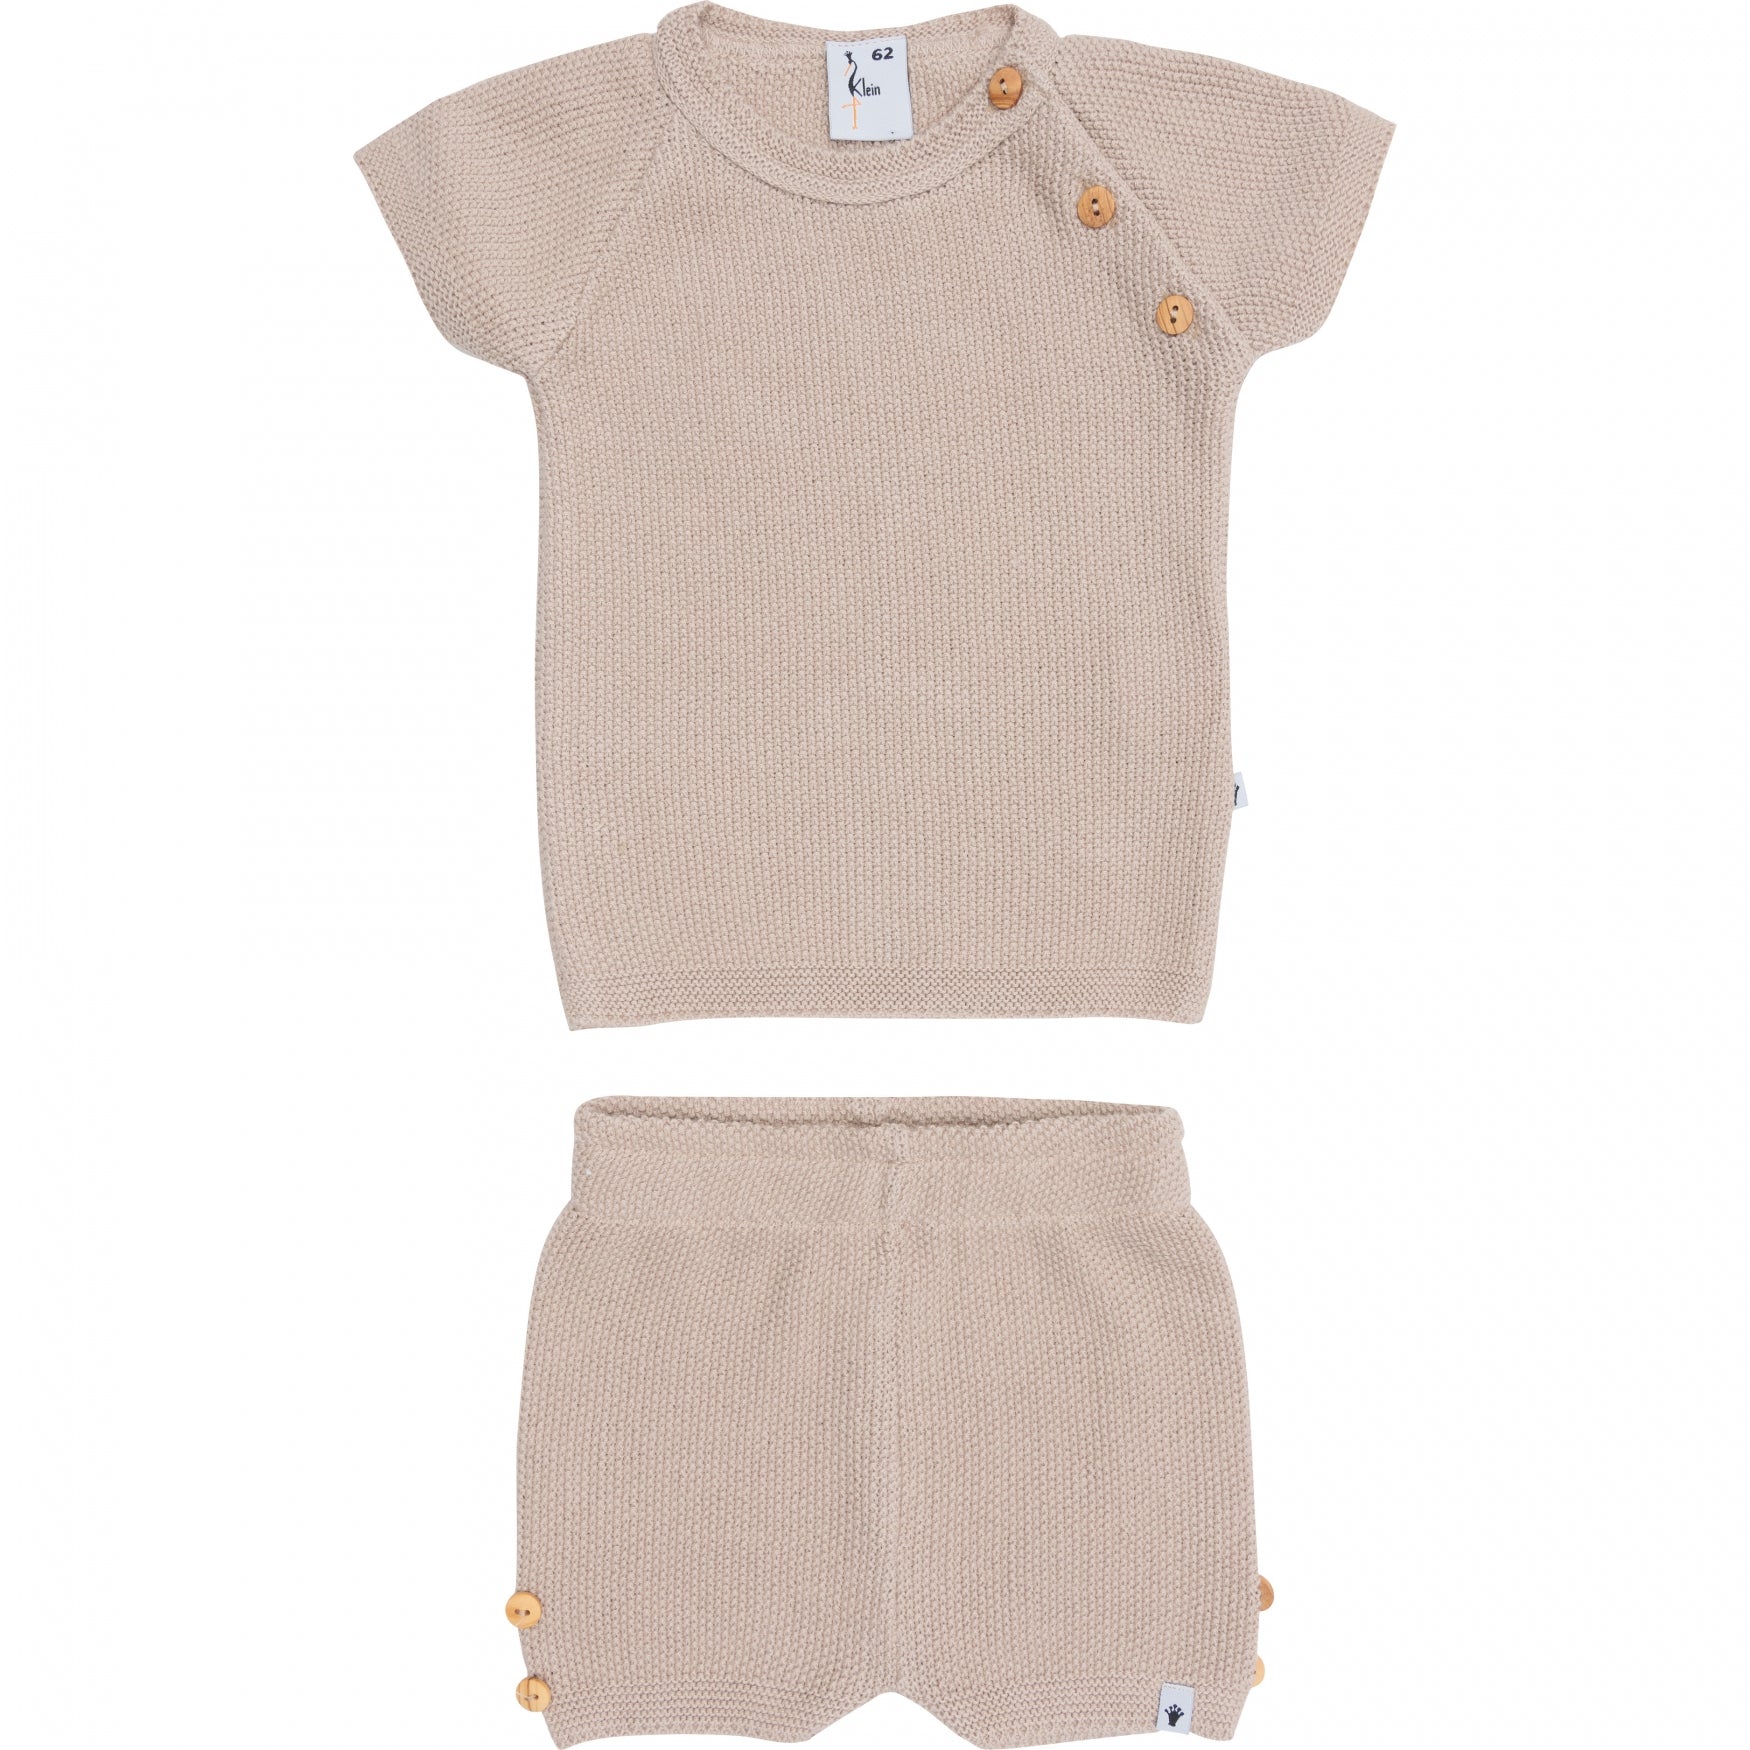 Jongens Knitted Set T-Shirt & Short van Klein Baby in de kleur Ancient Scroll in maat 74.